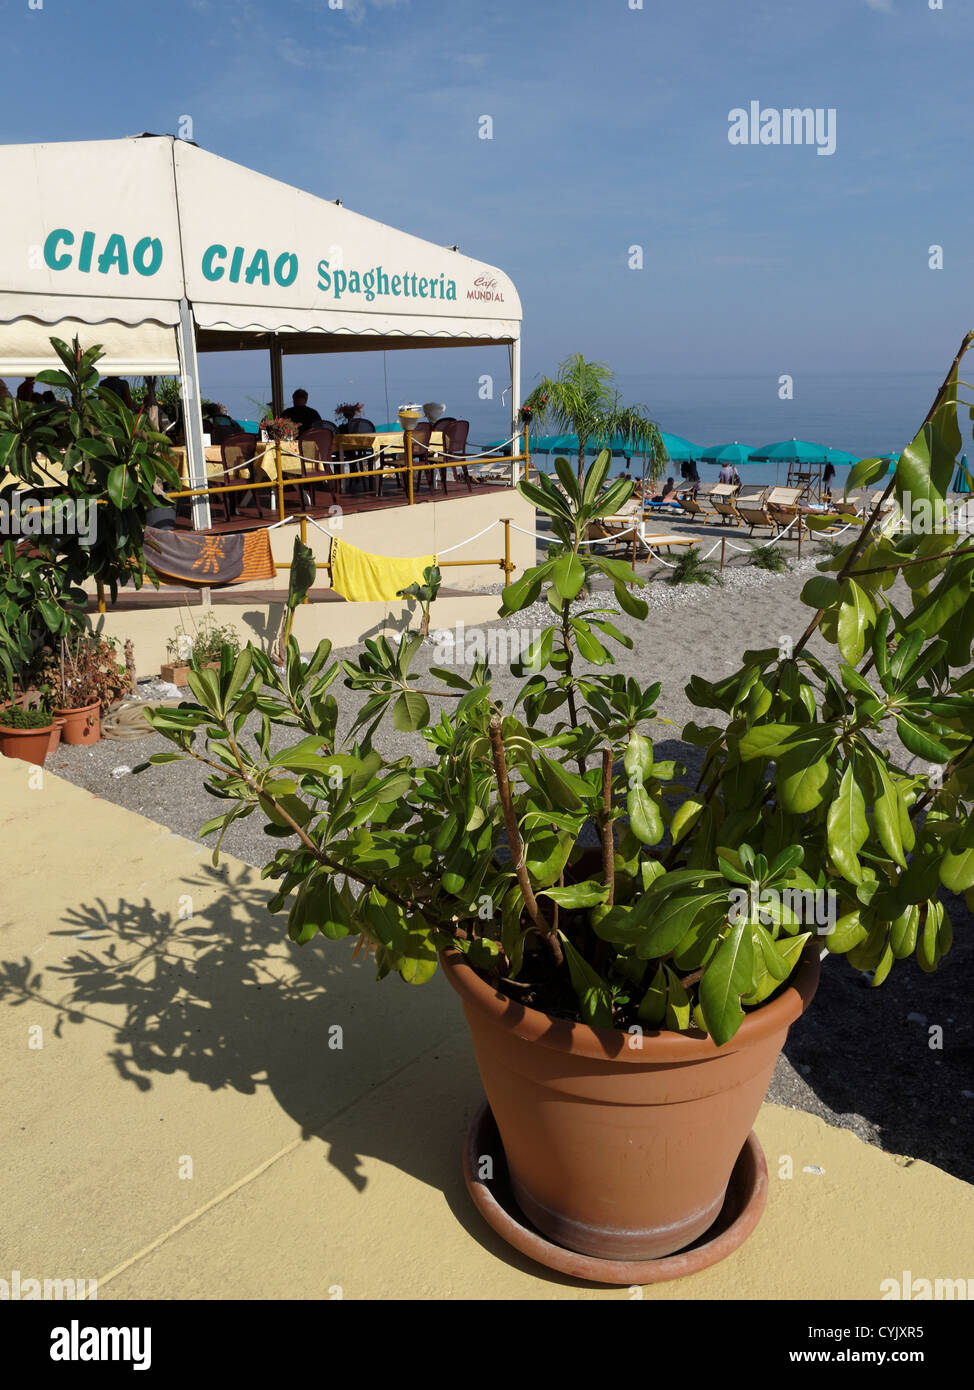 The Ciao Ciao ristorante, Letojanni, Sicily, Italy. Stock Photo